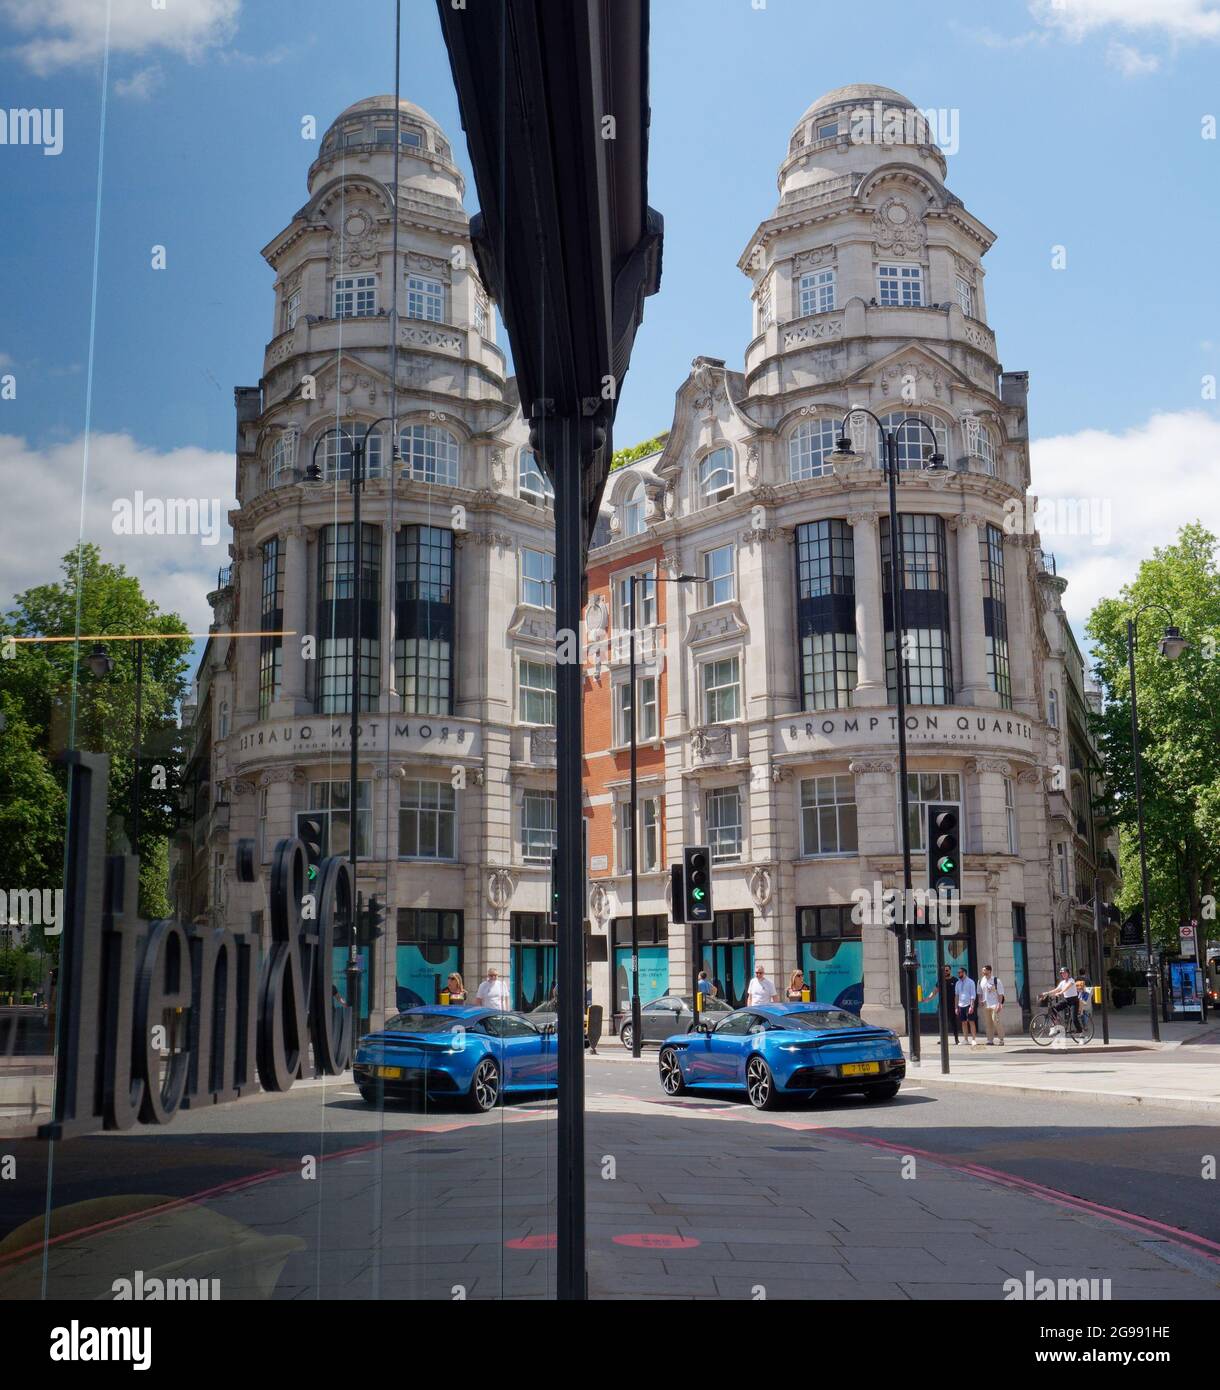 Londres, Grand Londres, Angleterre, 12 juin 2021 : image miroir de Brompton Quarter Empire House et voiture de sport bleue. Banque D'Images